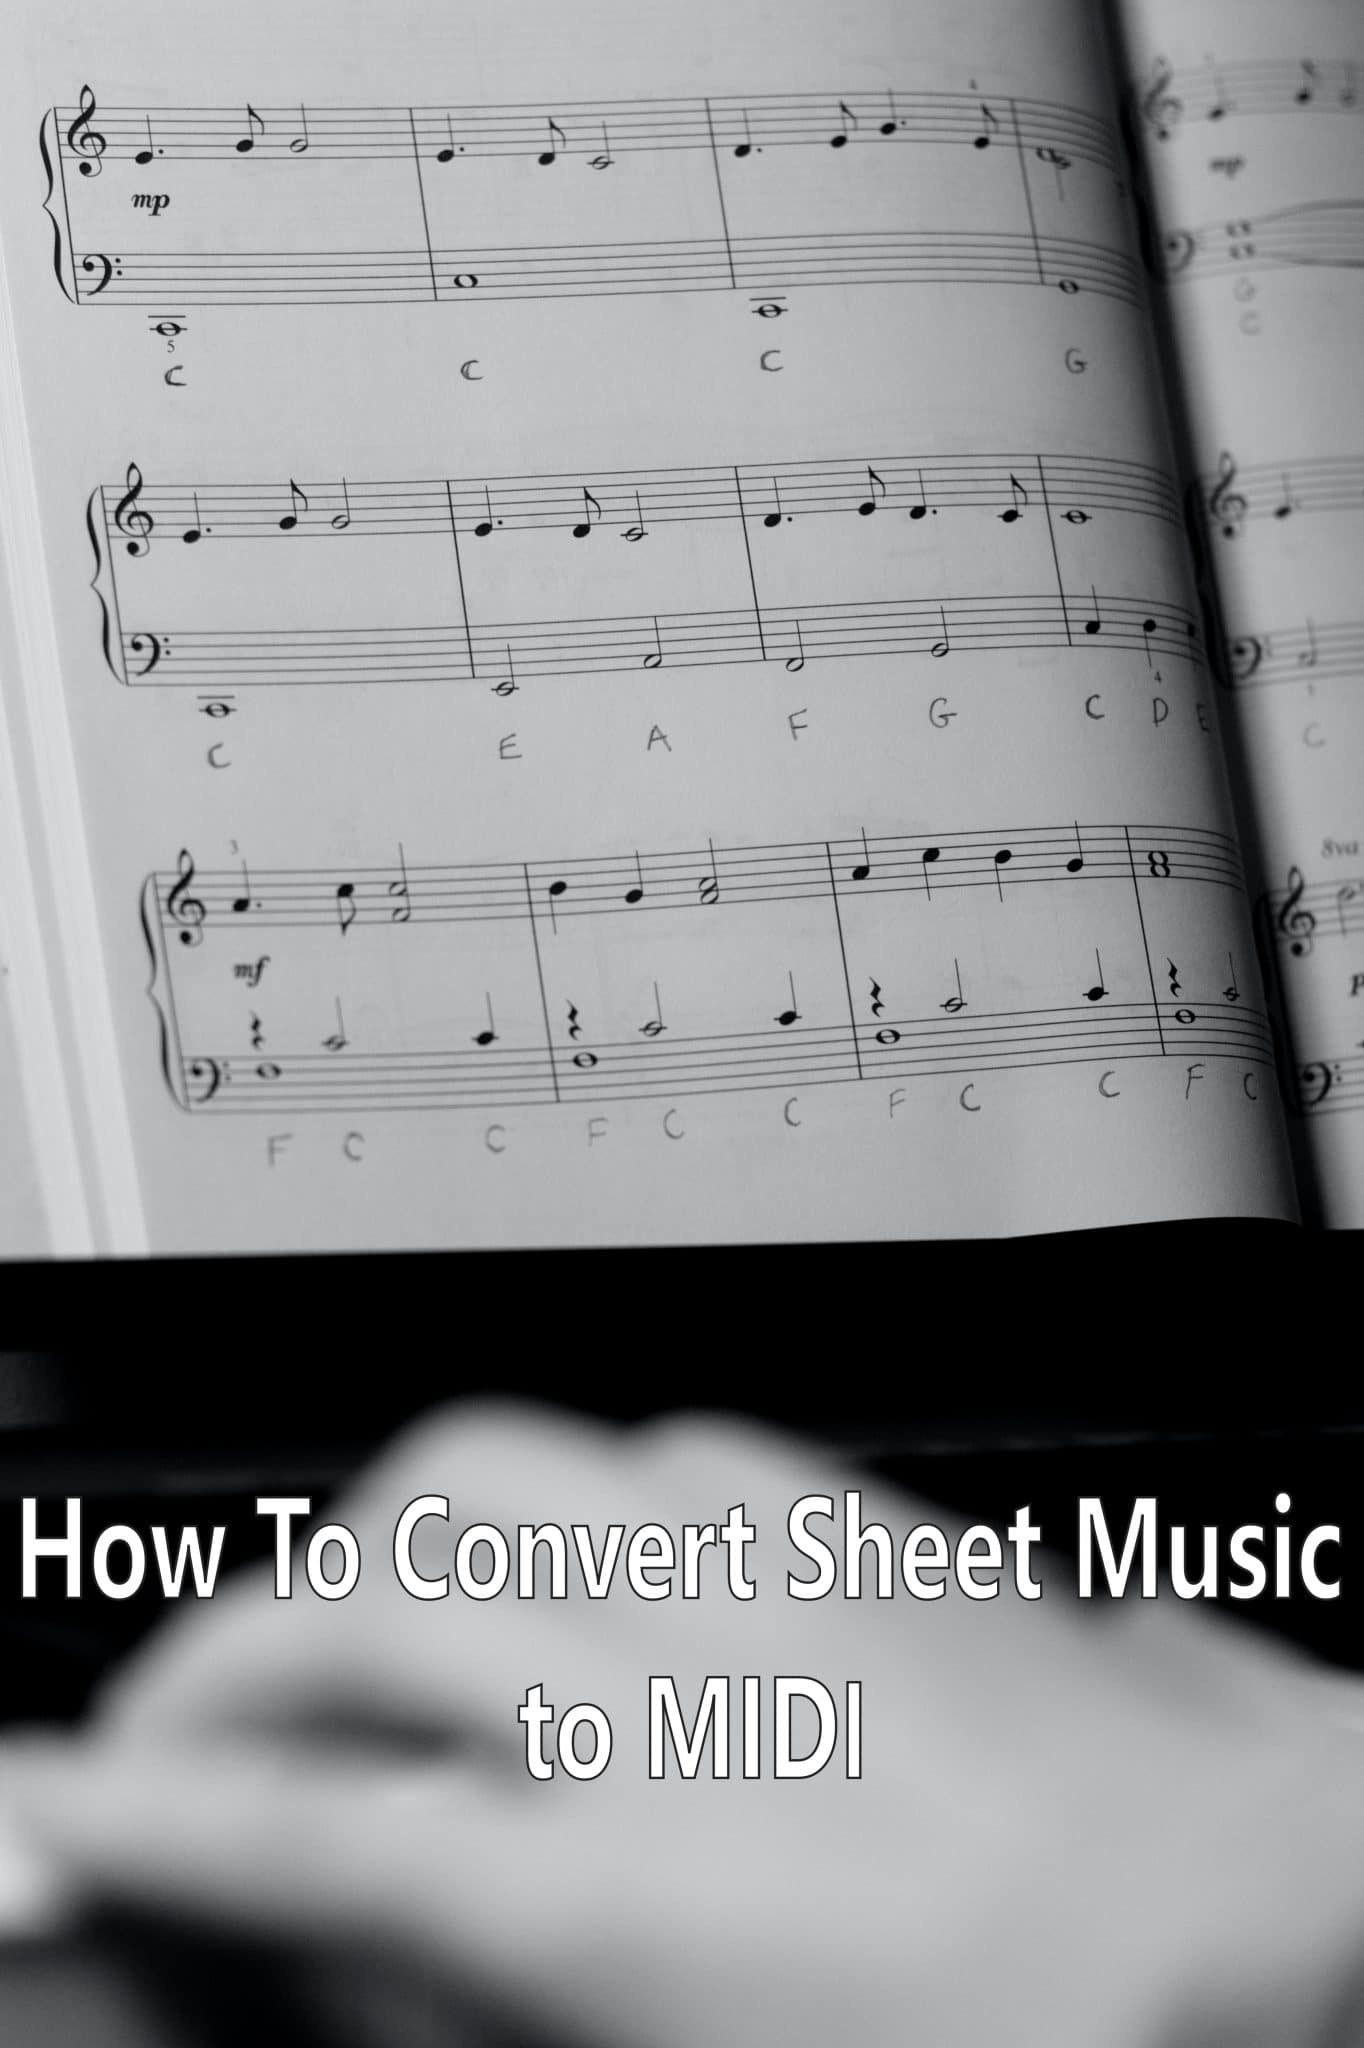 convert audio to sheet music online